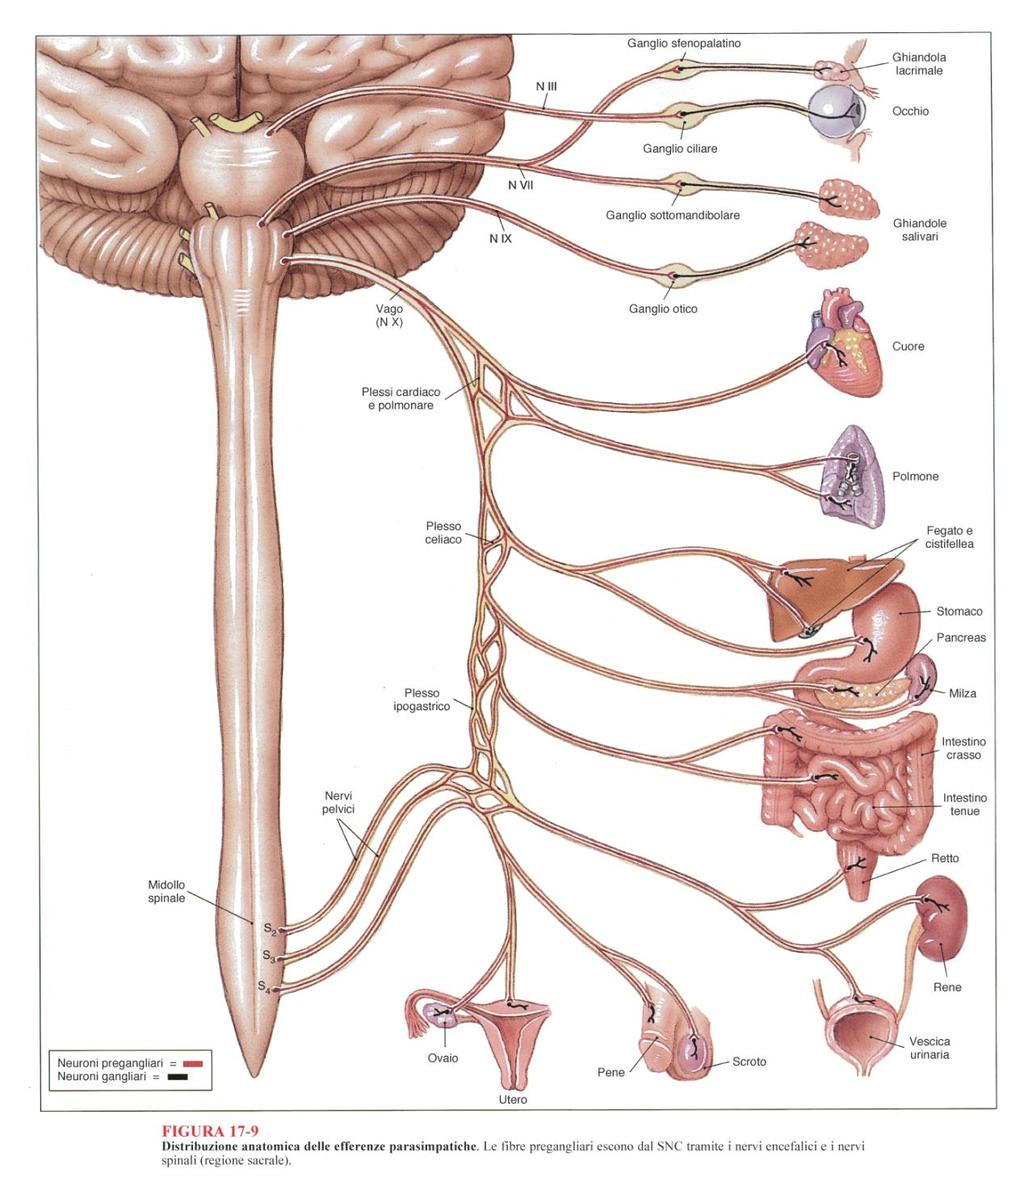 Sistema nervoso parasimpatico (divisione